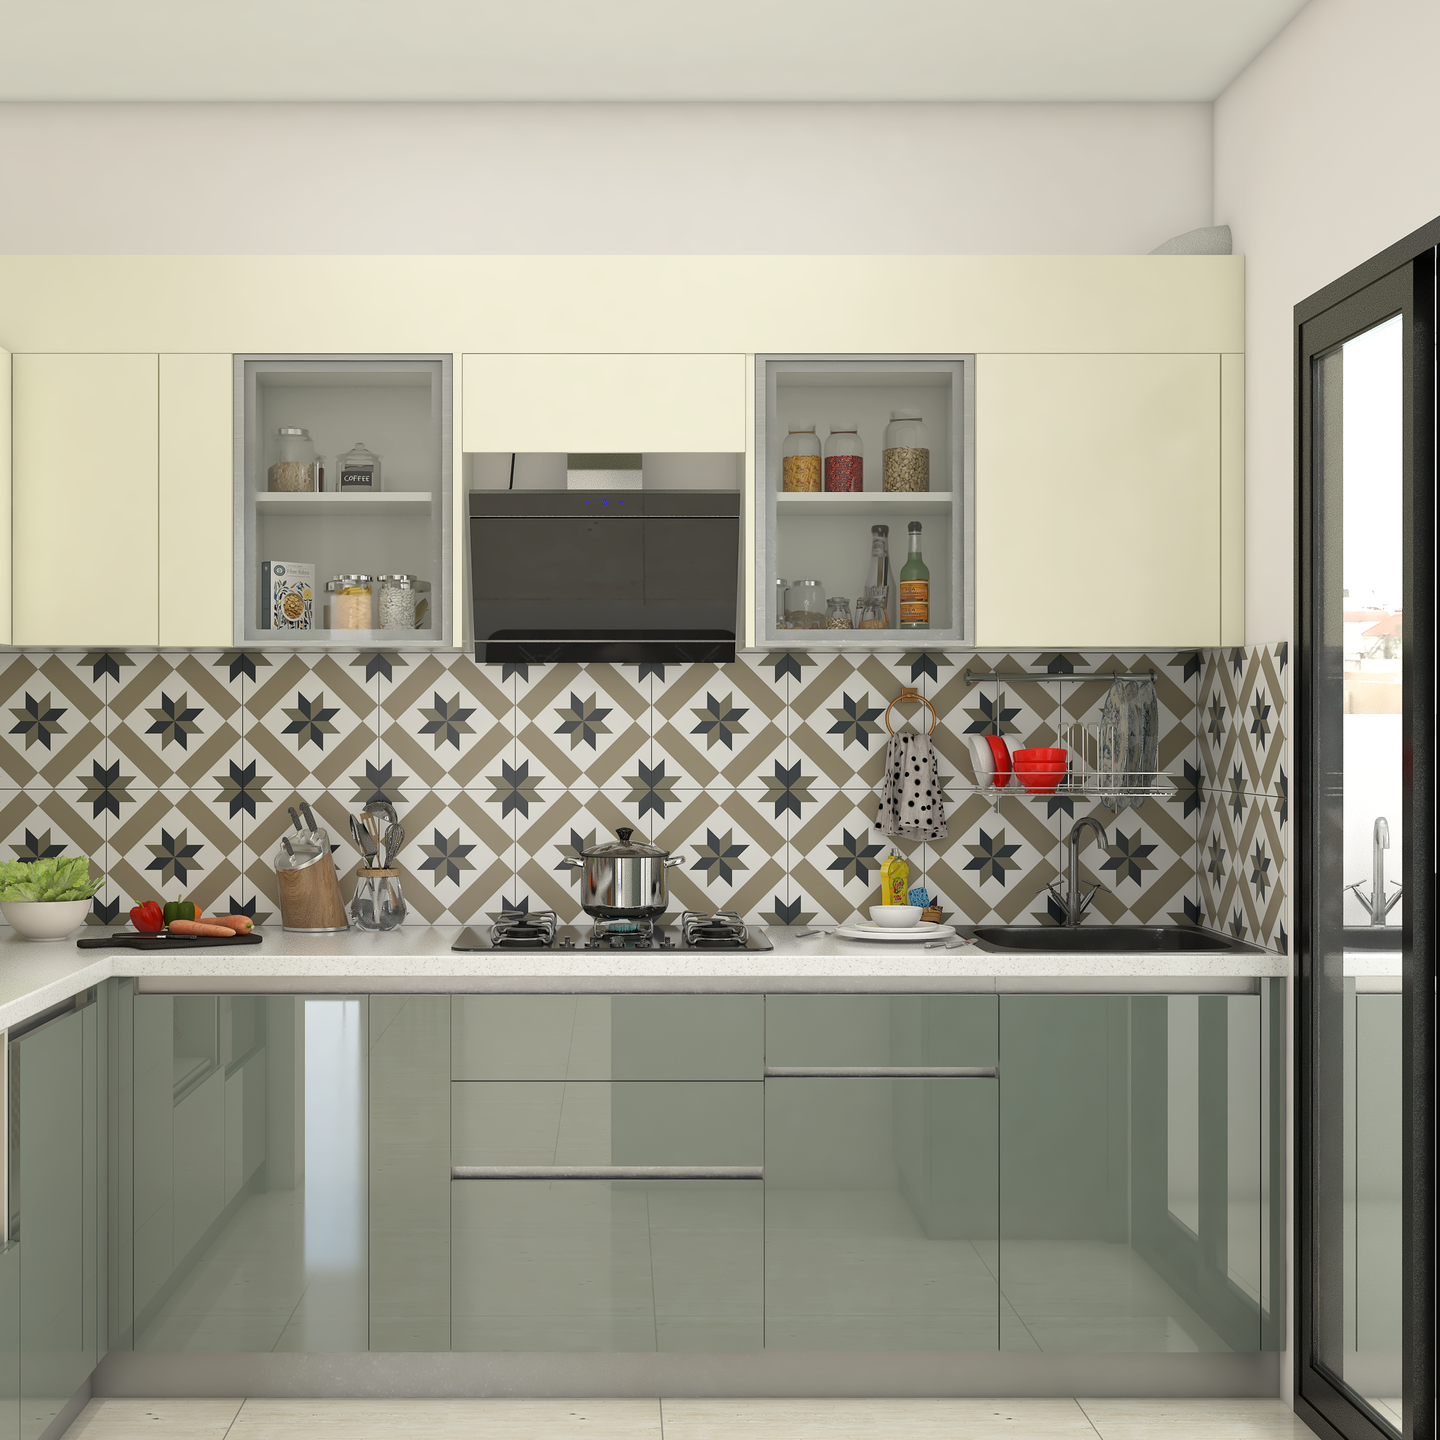 Modular Kitchen Design - Livspace